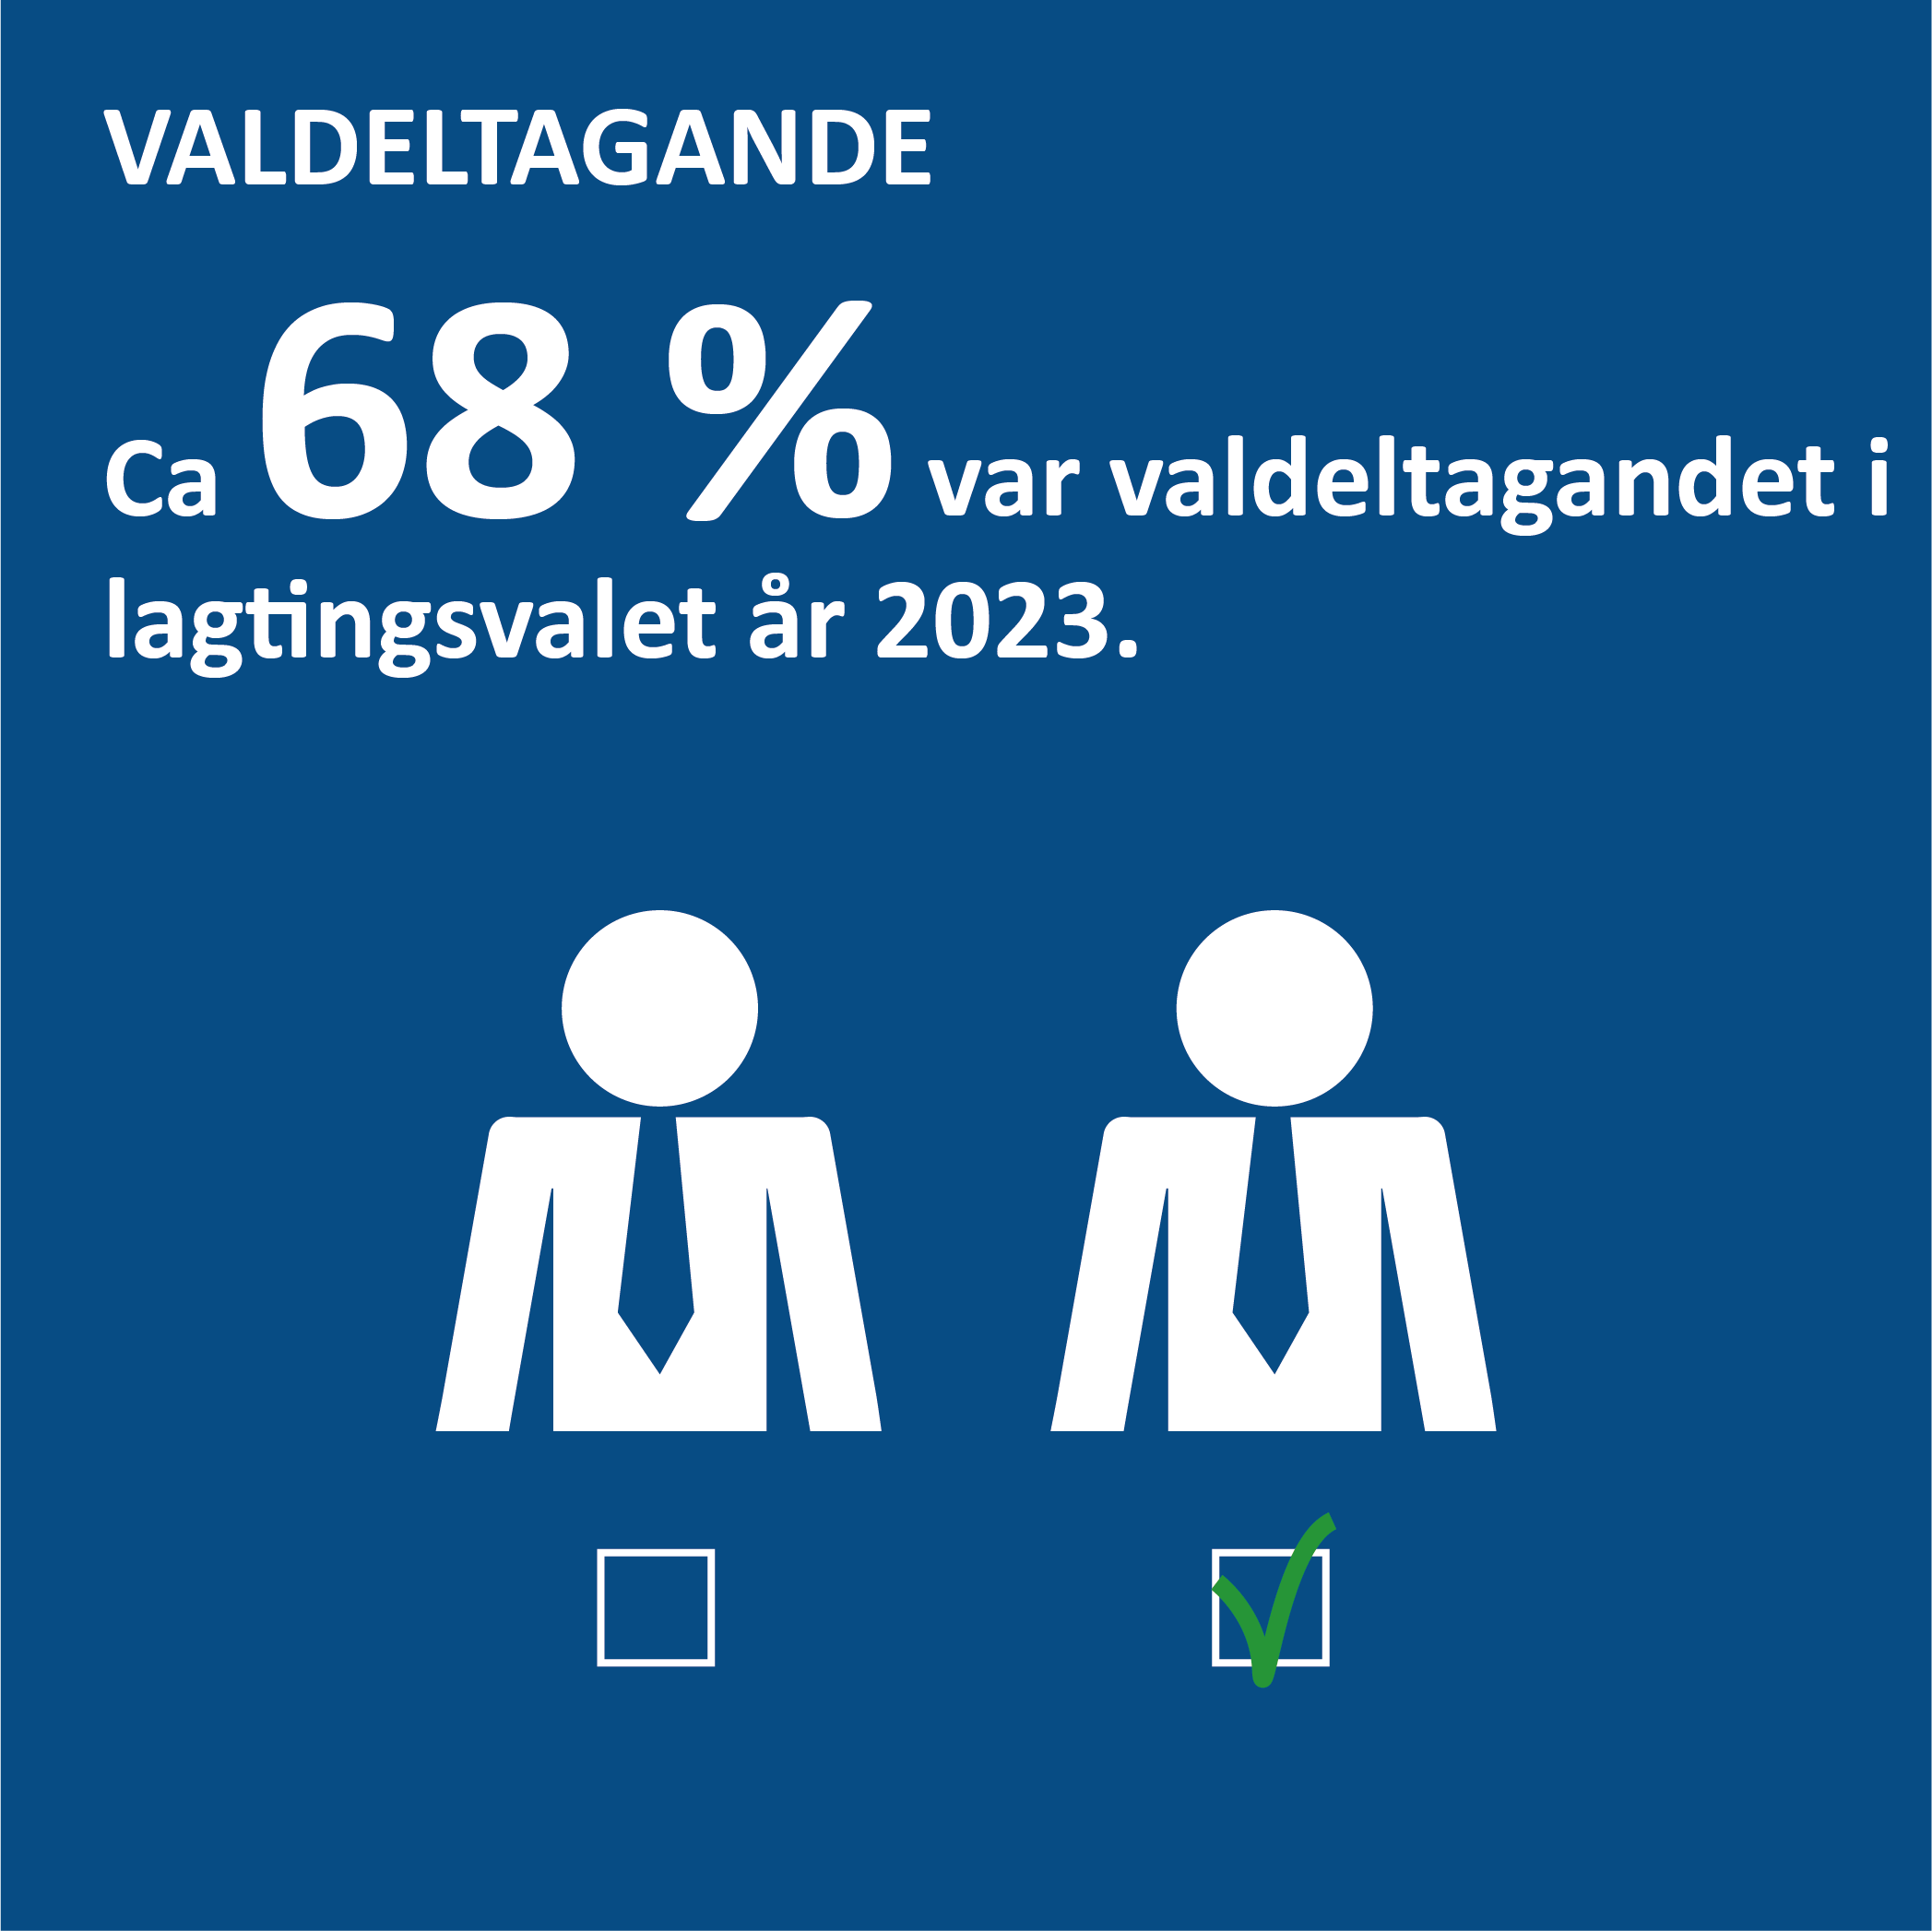 Infografik om valdeltagandet på Åland